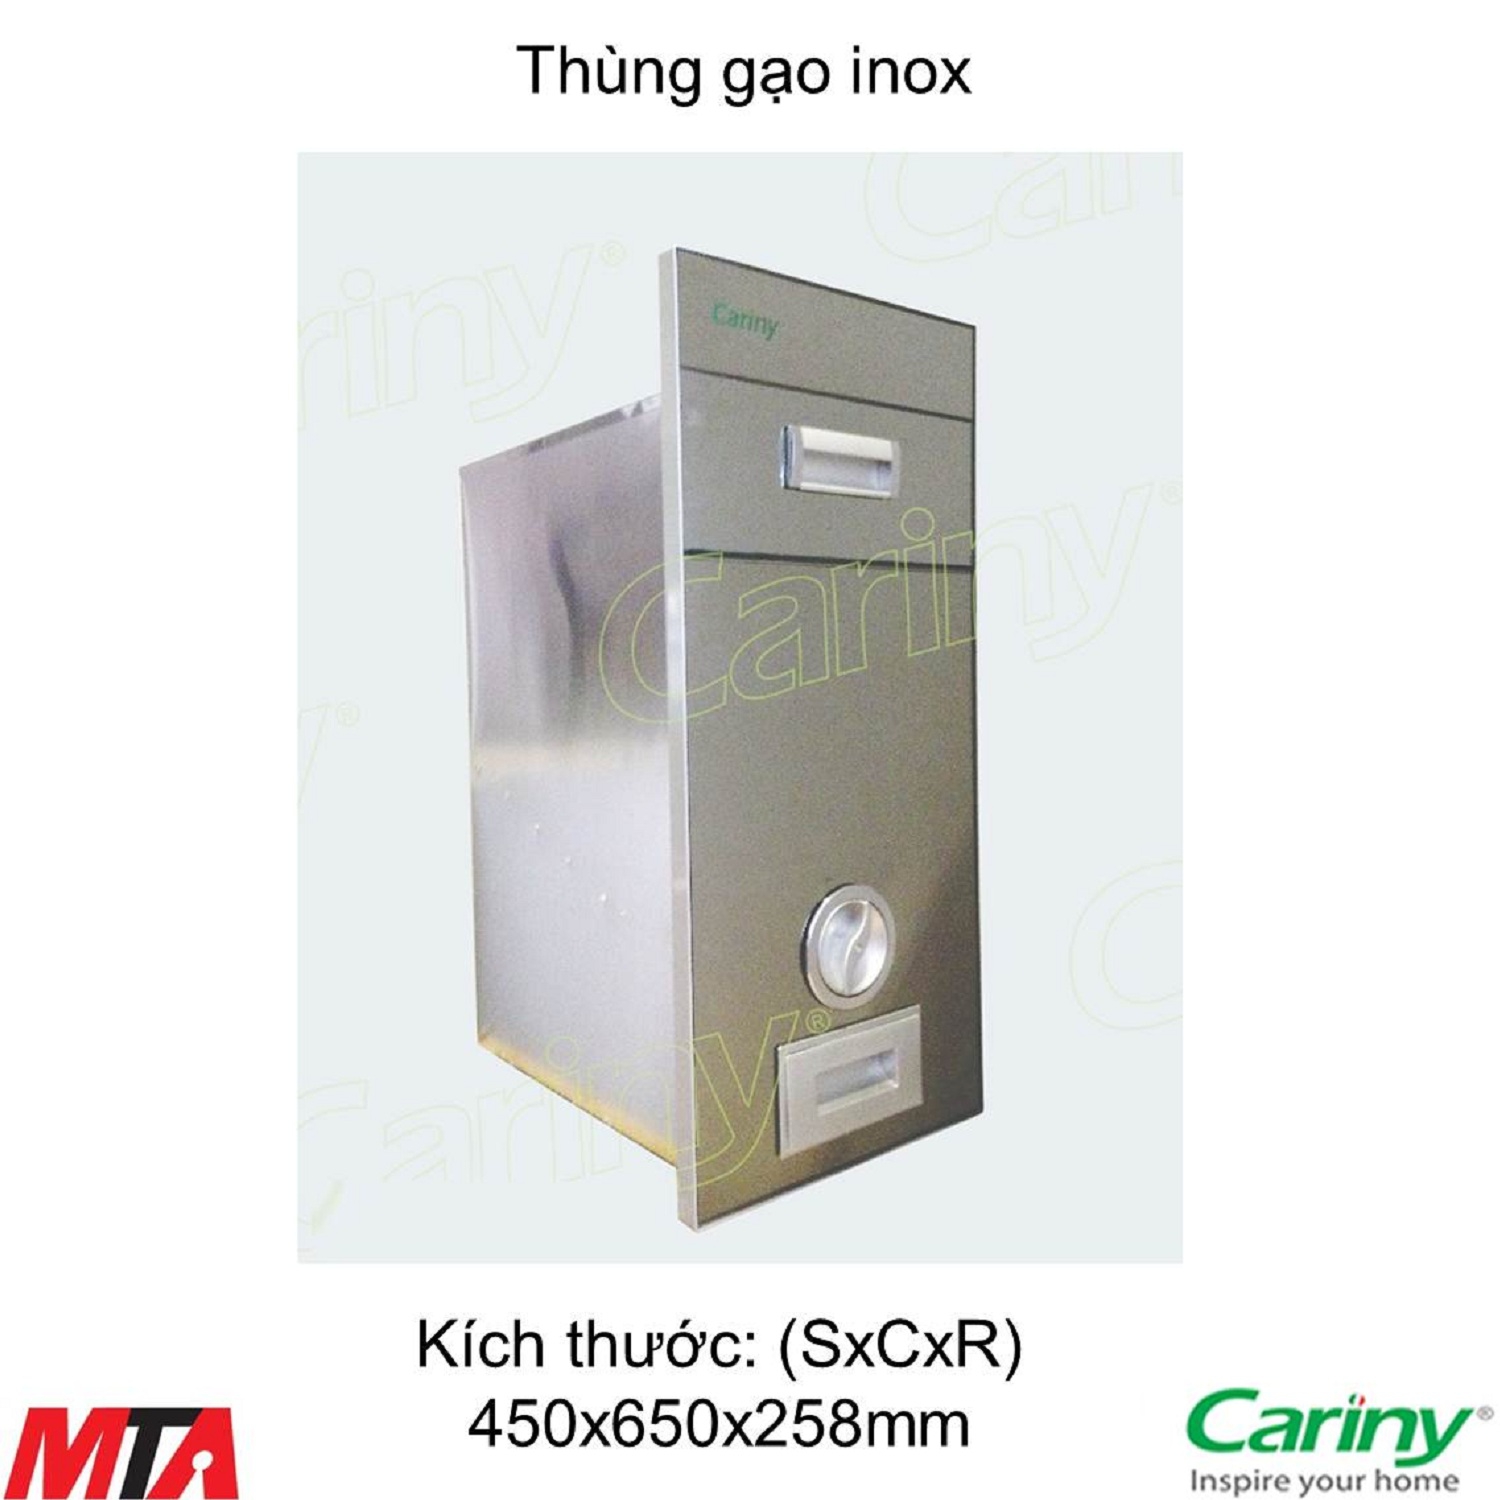 Thung-gao-cariny